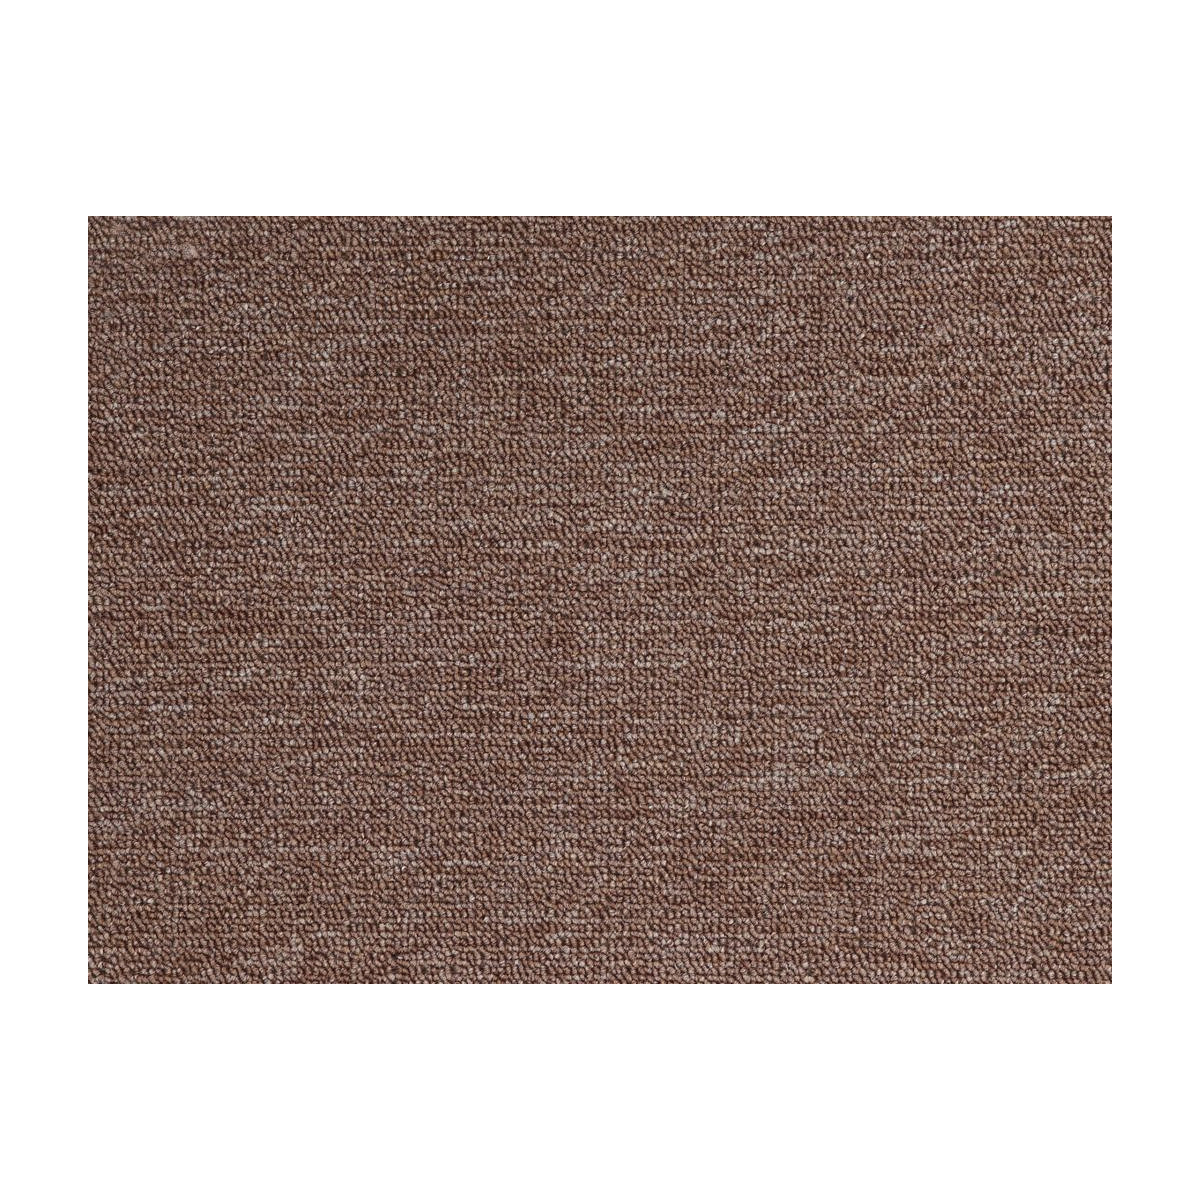 AKCE: 60x190 cm Metrážový koberec Rambo - Bet 93